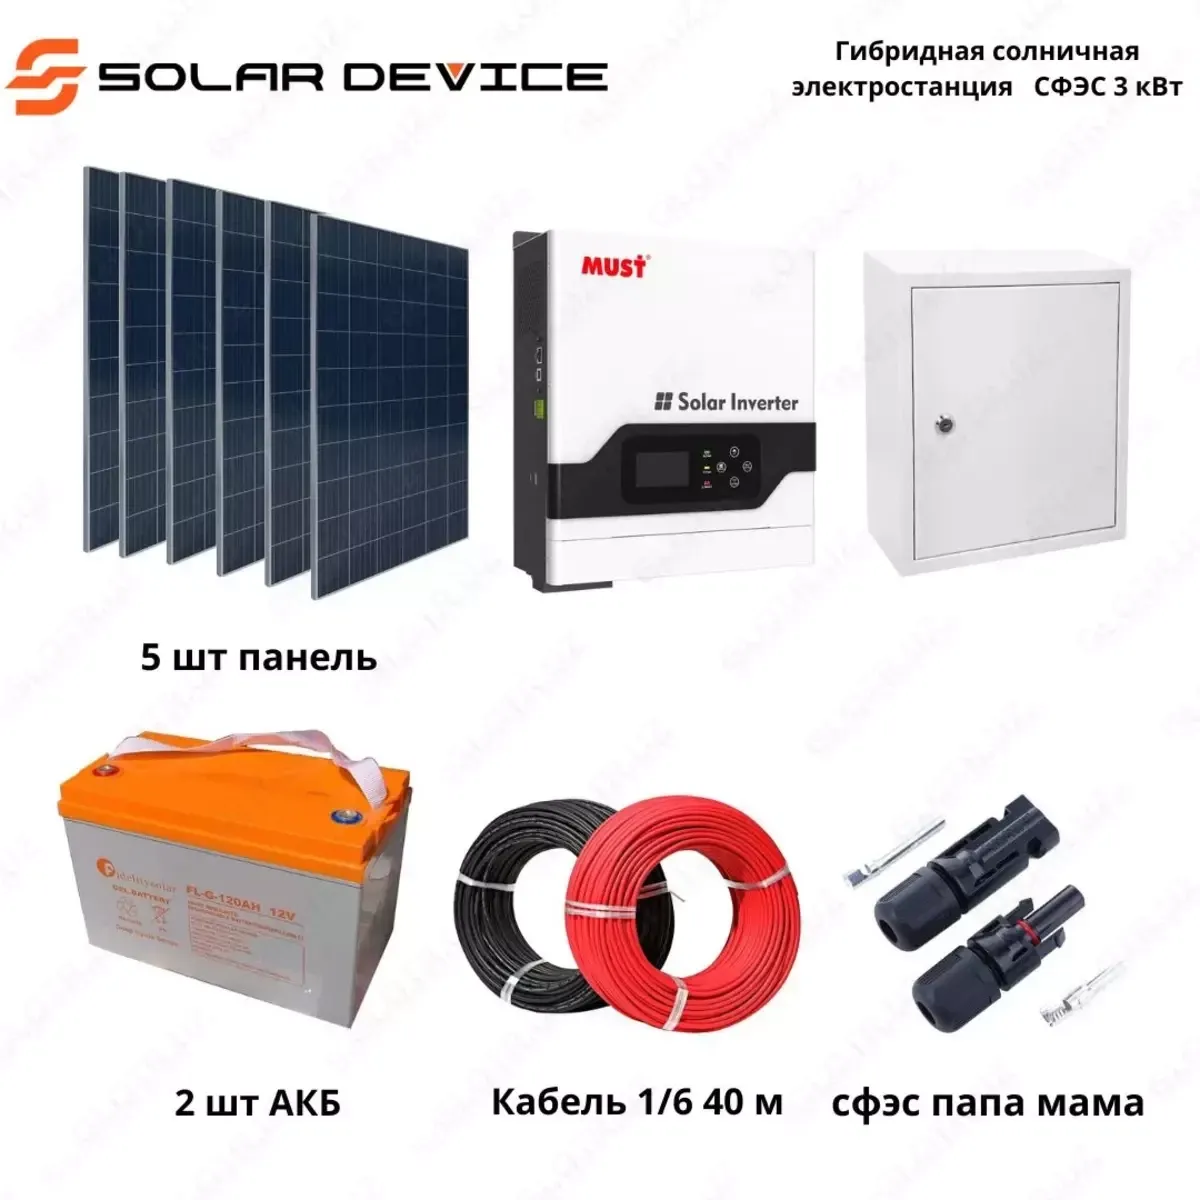 Гибридная солнечная электростанция "SOLAR" СФЭС (3 кВт)#1